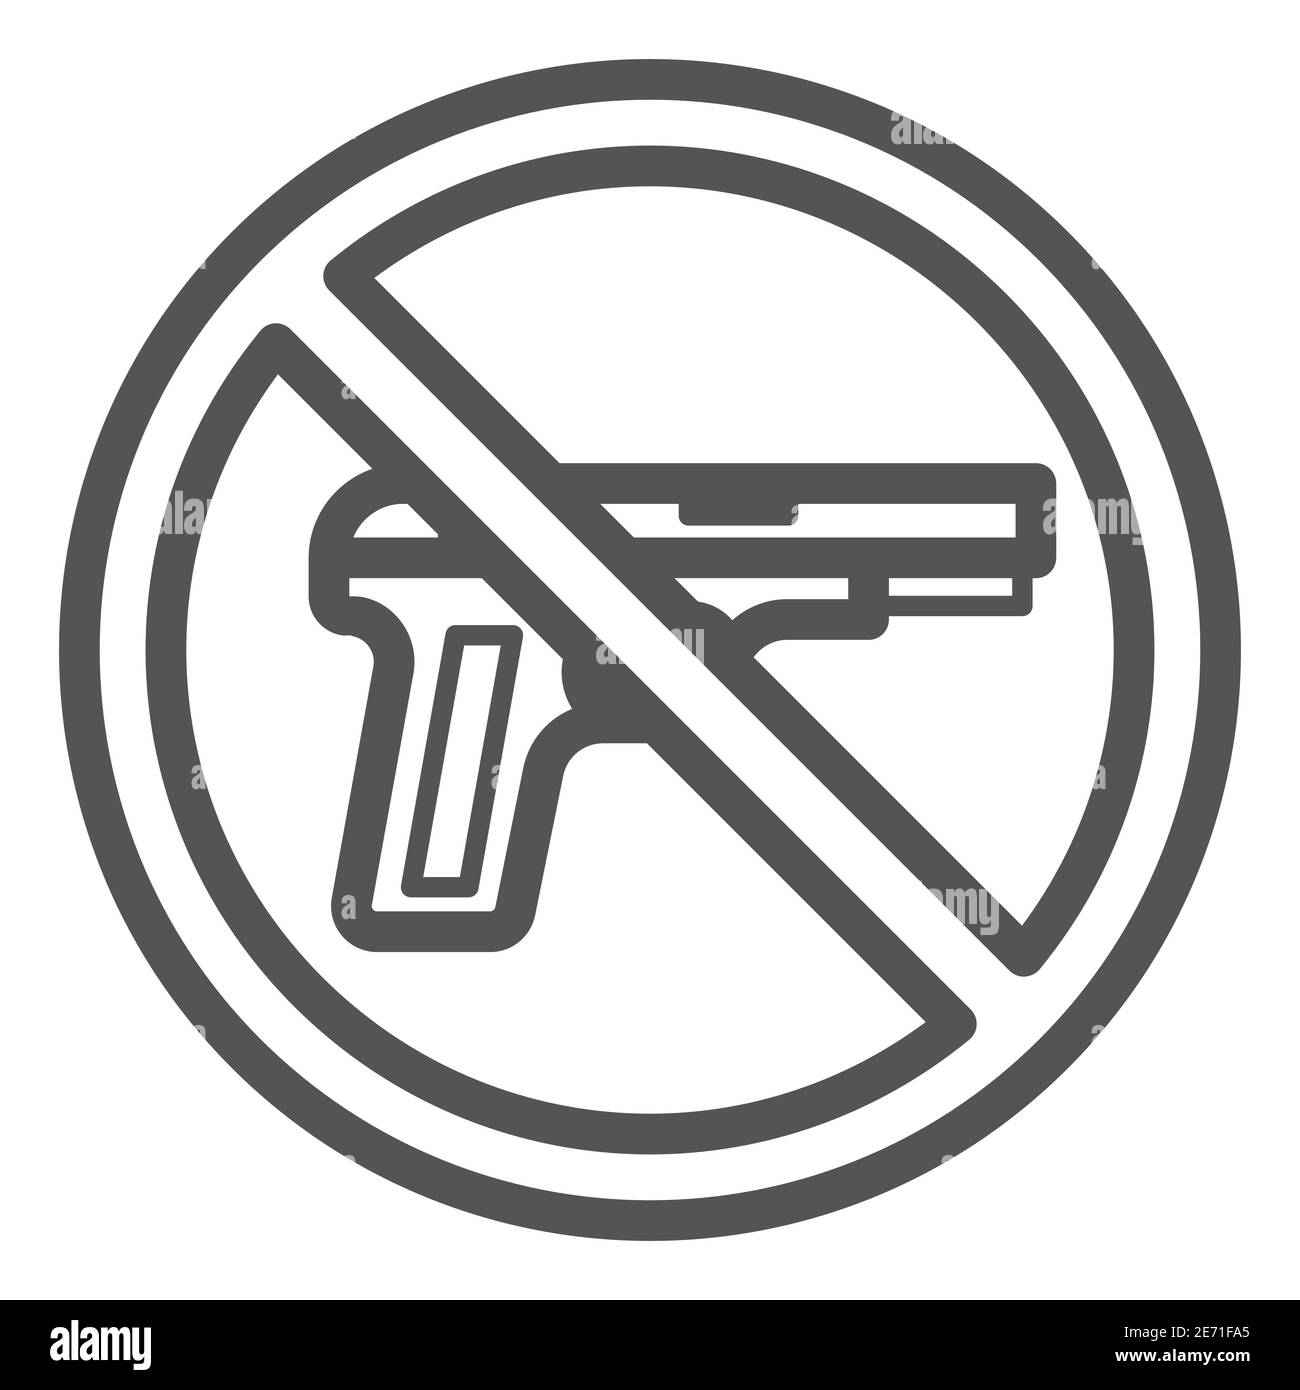 Keine Schusswaffen Linie Symbol, Black Lives Matter Konzept, Keine Schusswaffen oder Waffen Warnschild auf weißem Hintergrund, Kreis keine Waffe verboten Zeichen in Umriss Stock Vektor